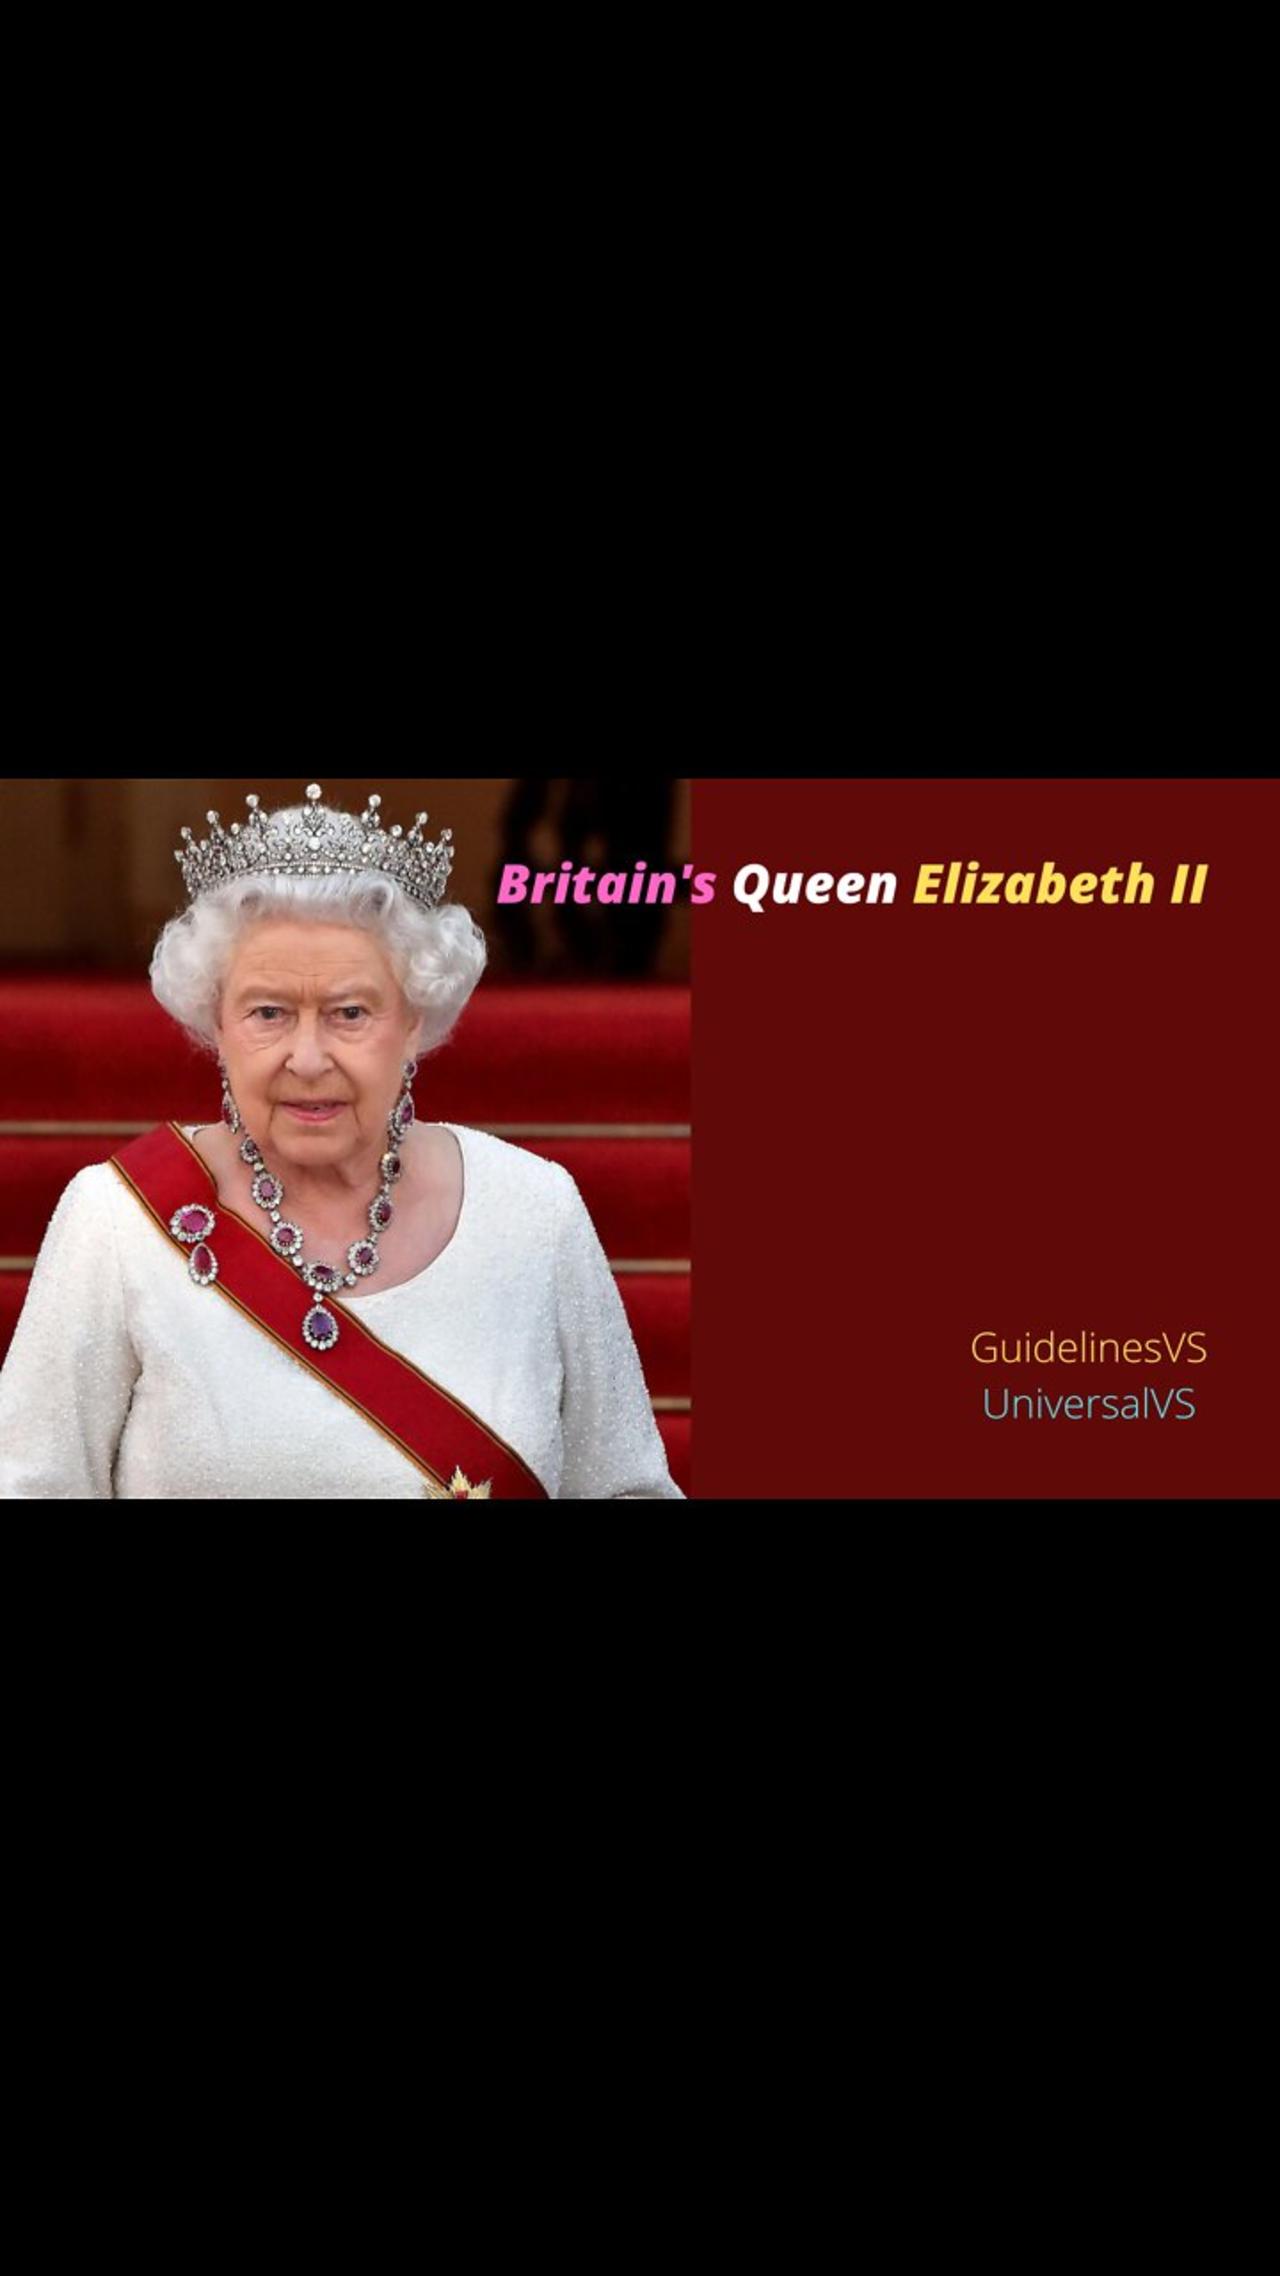 Britain's Queen Elizabeth II has passed away